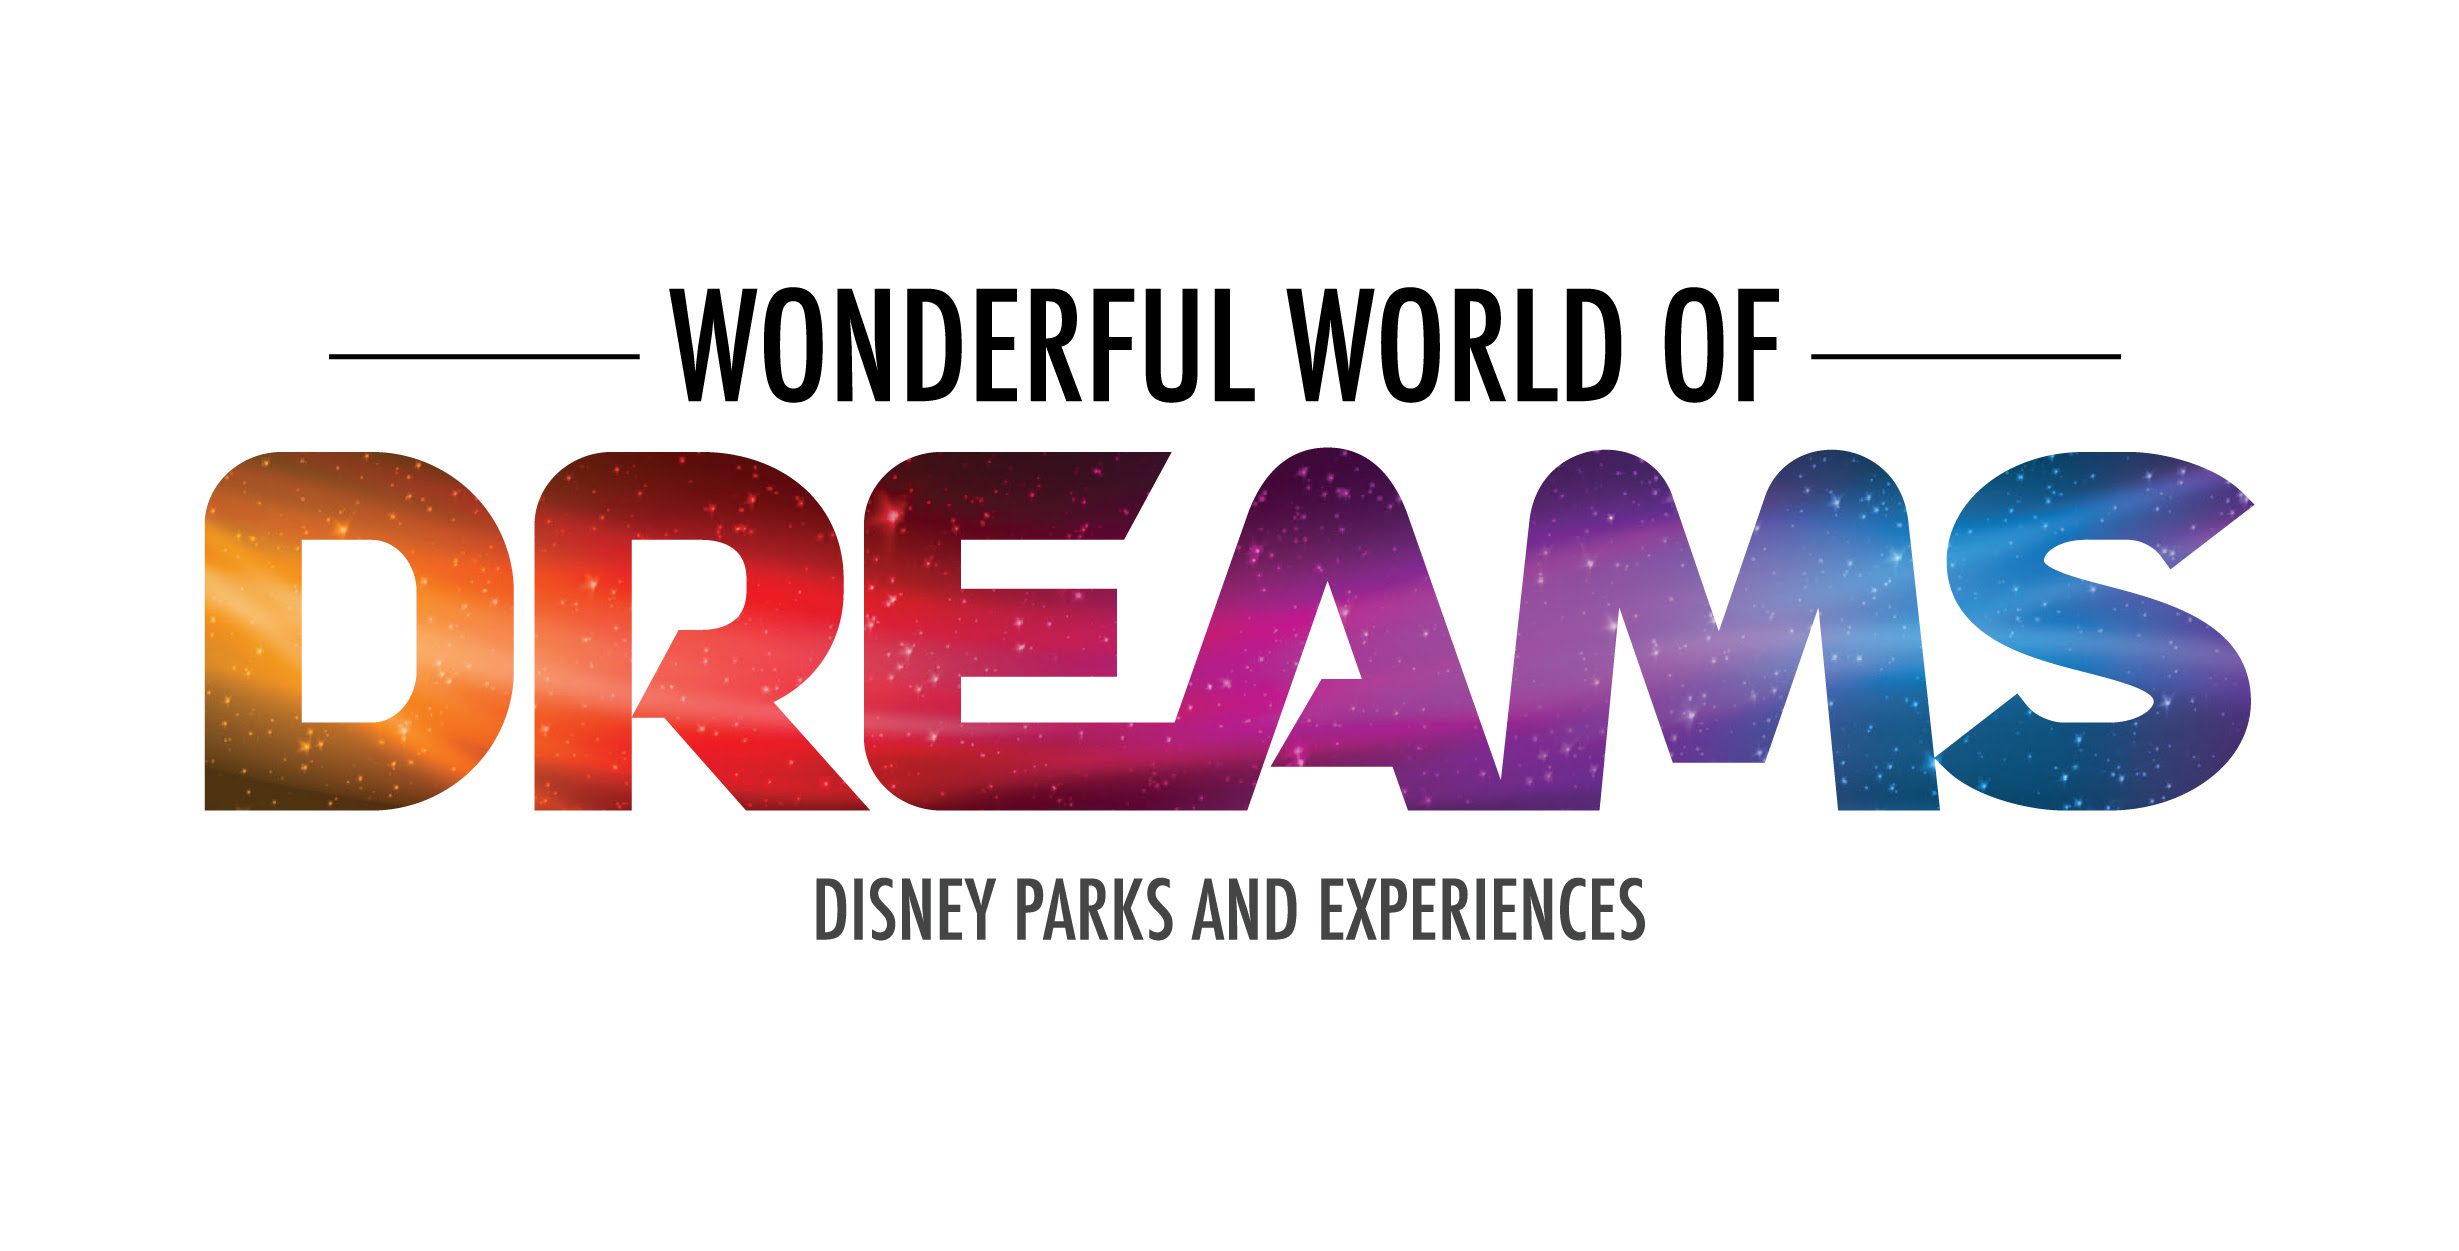 Apresentacoes de experiencias e produtos dos parques Disney D23